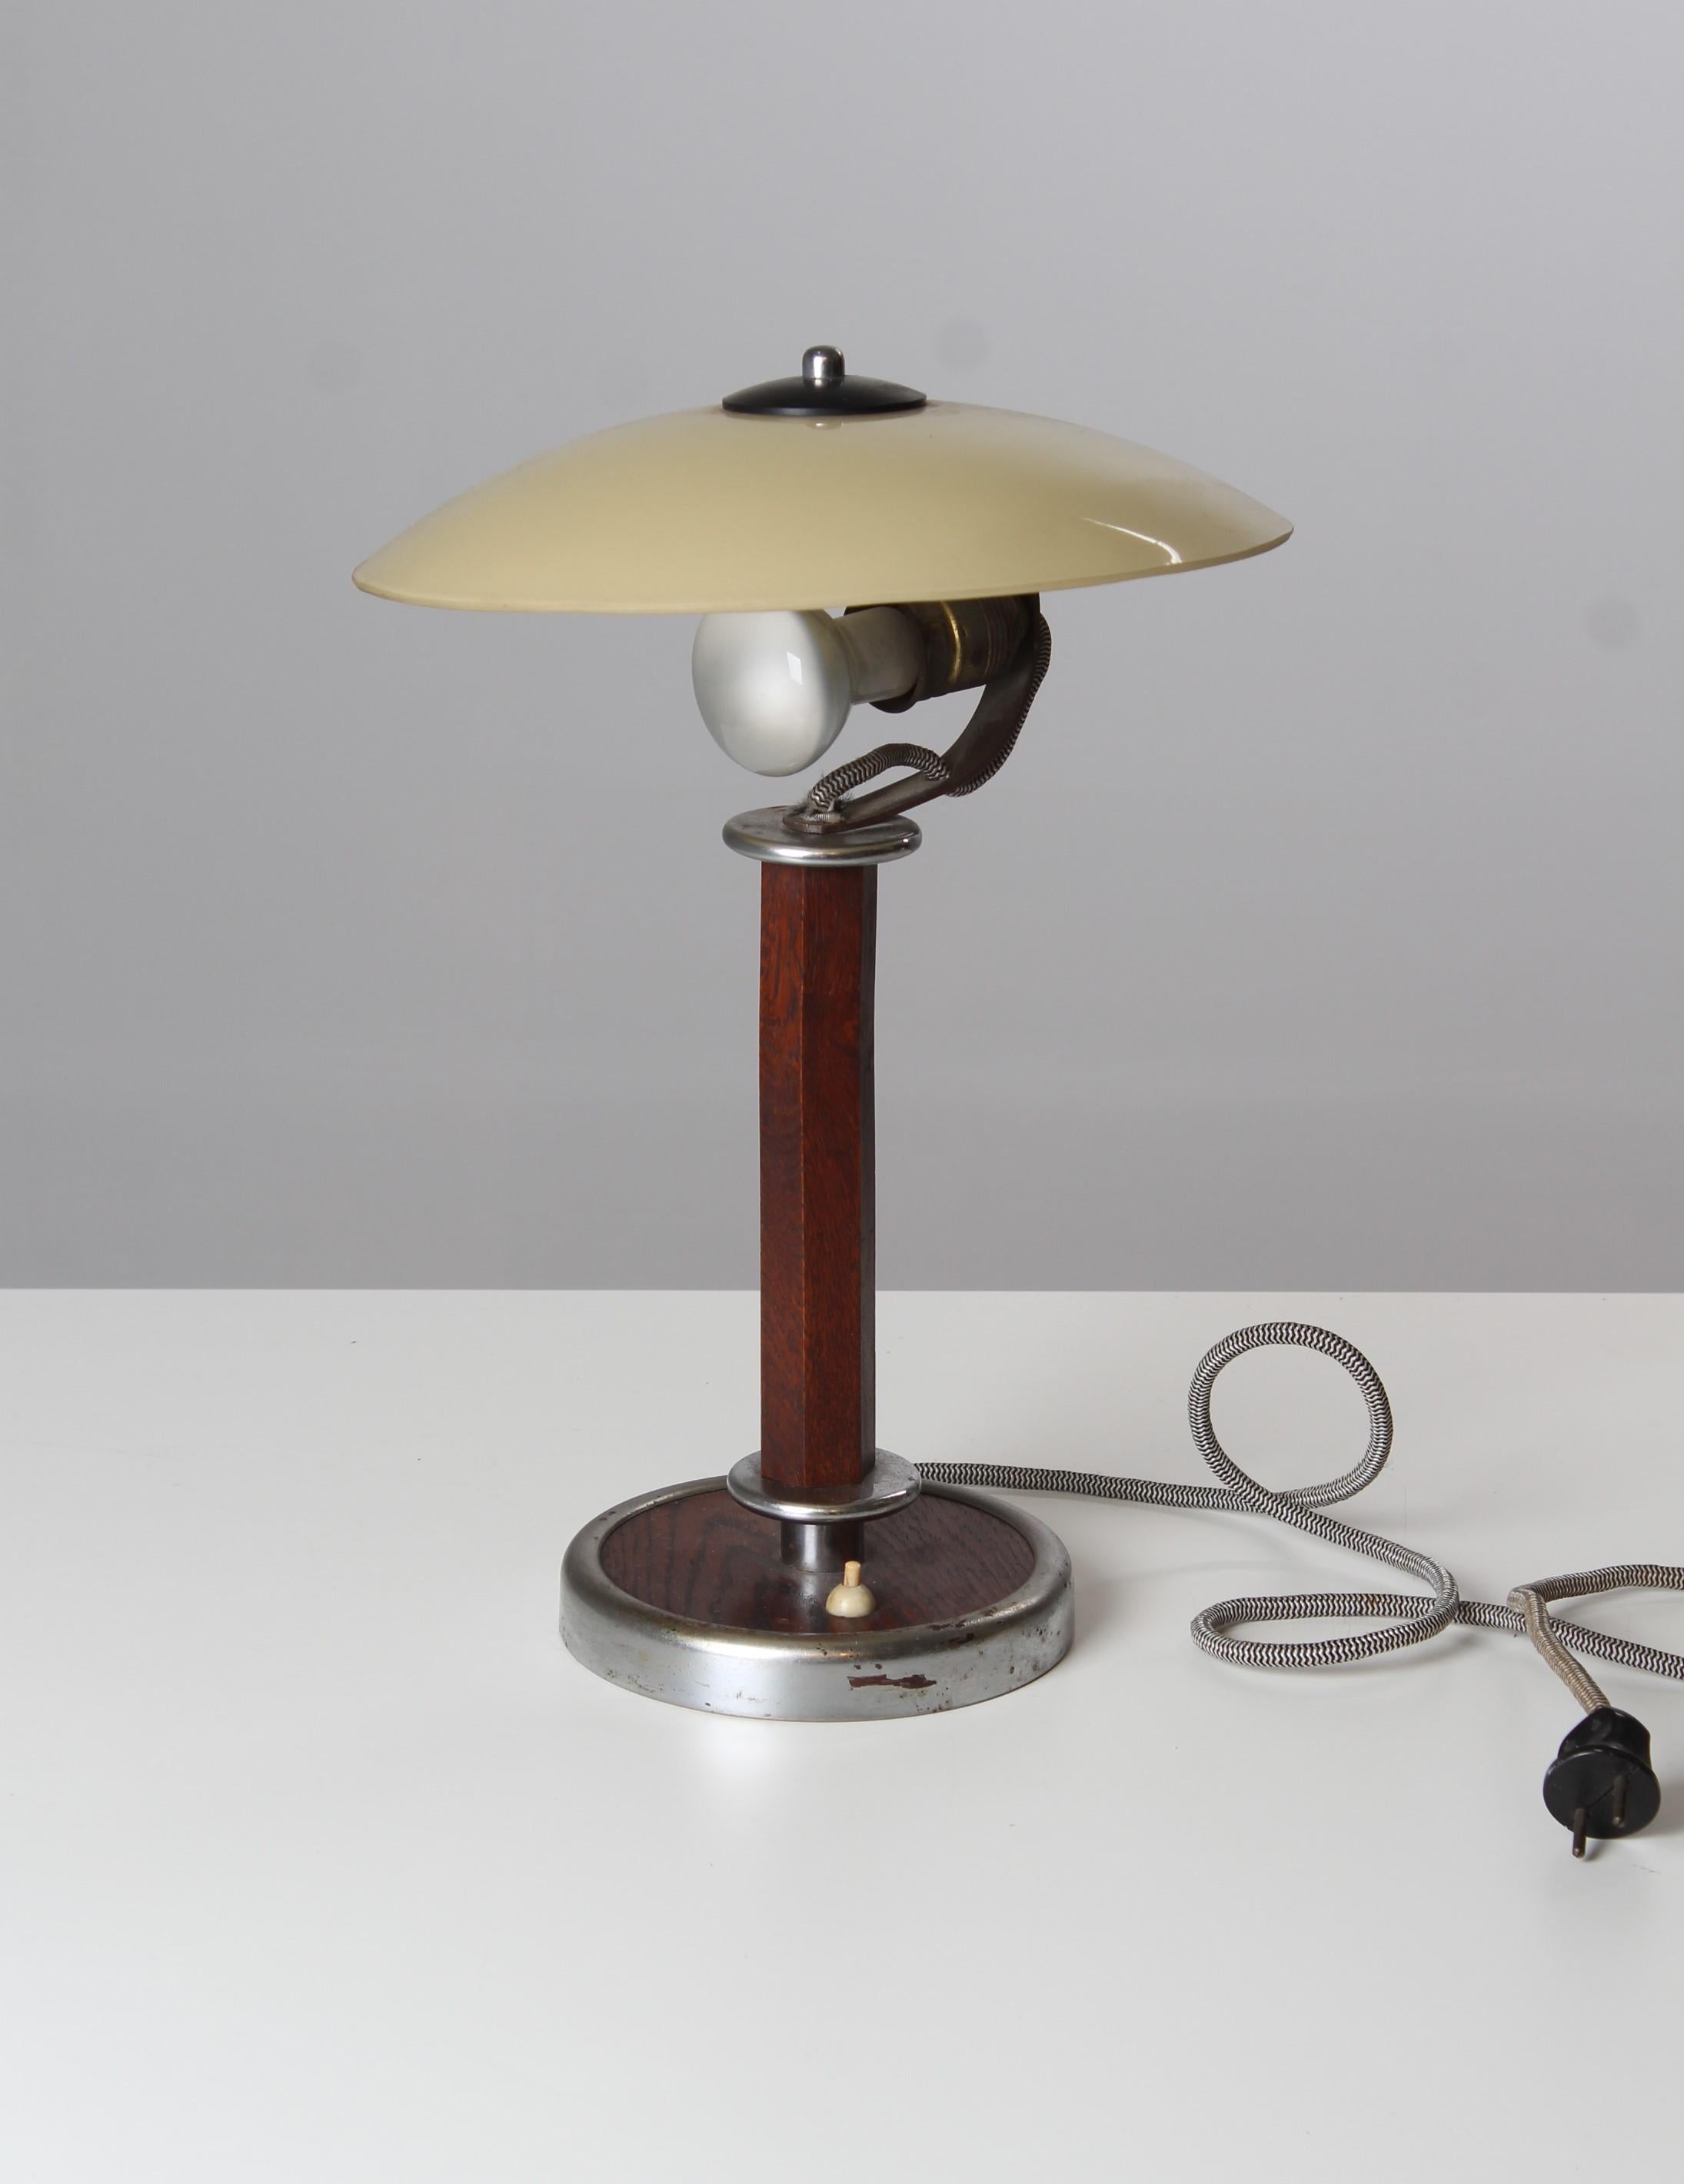 Original Art Deco Schreibtischlampe aus den 1920er oder 1930er Jahren. Authentischer Zustand mit Alters- und Gebrauchsspuren.
Guter Funktionszustand. 

Maße: Höhe: 42 cm, Durchmesser: 31 cm.